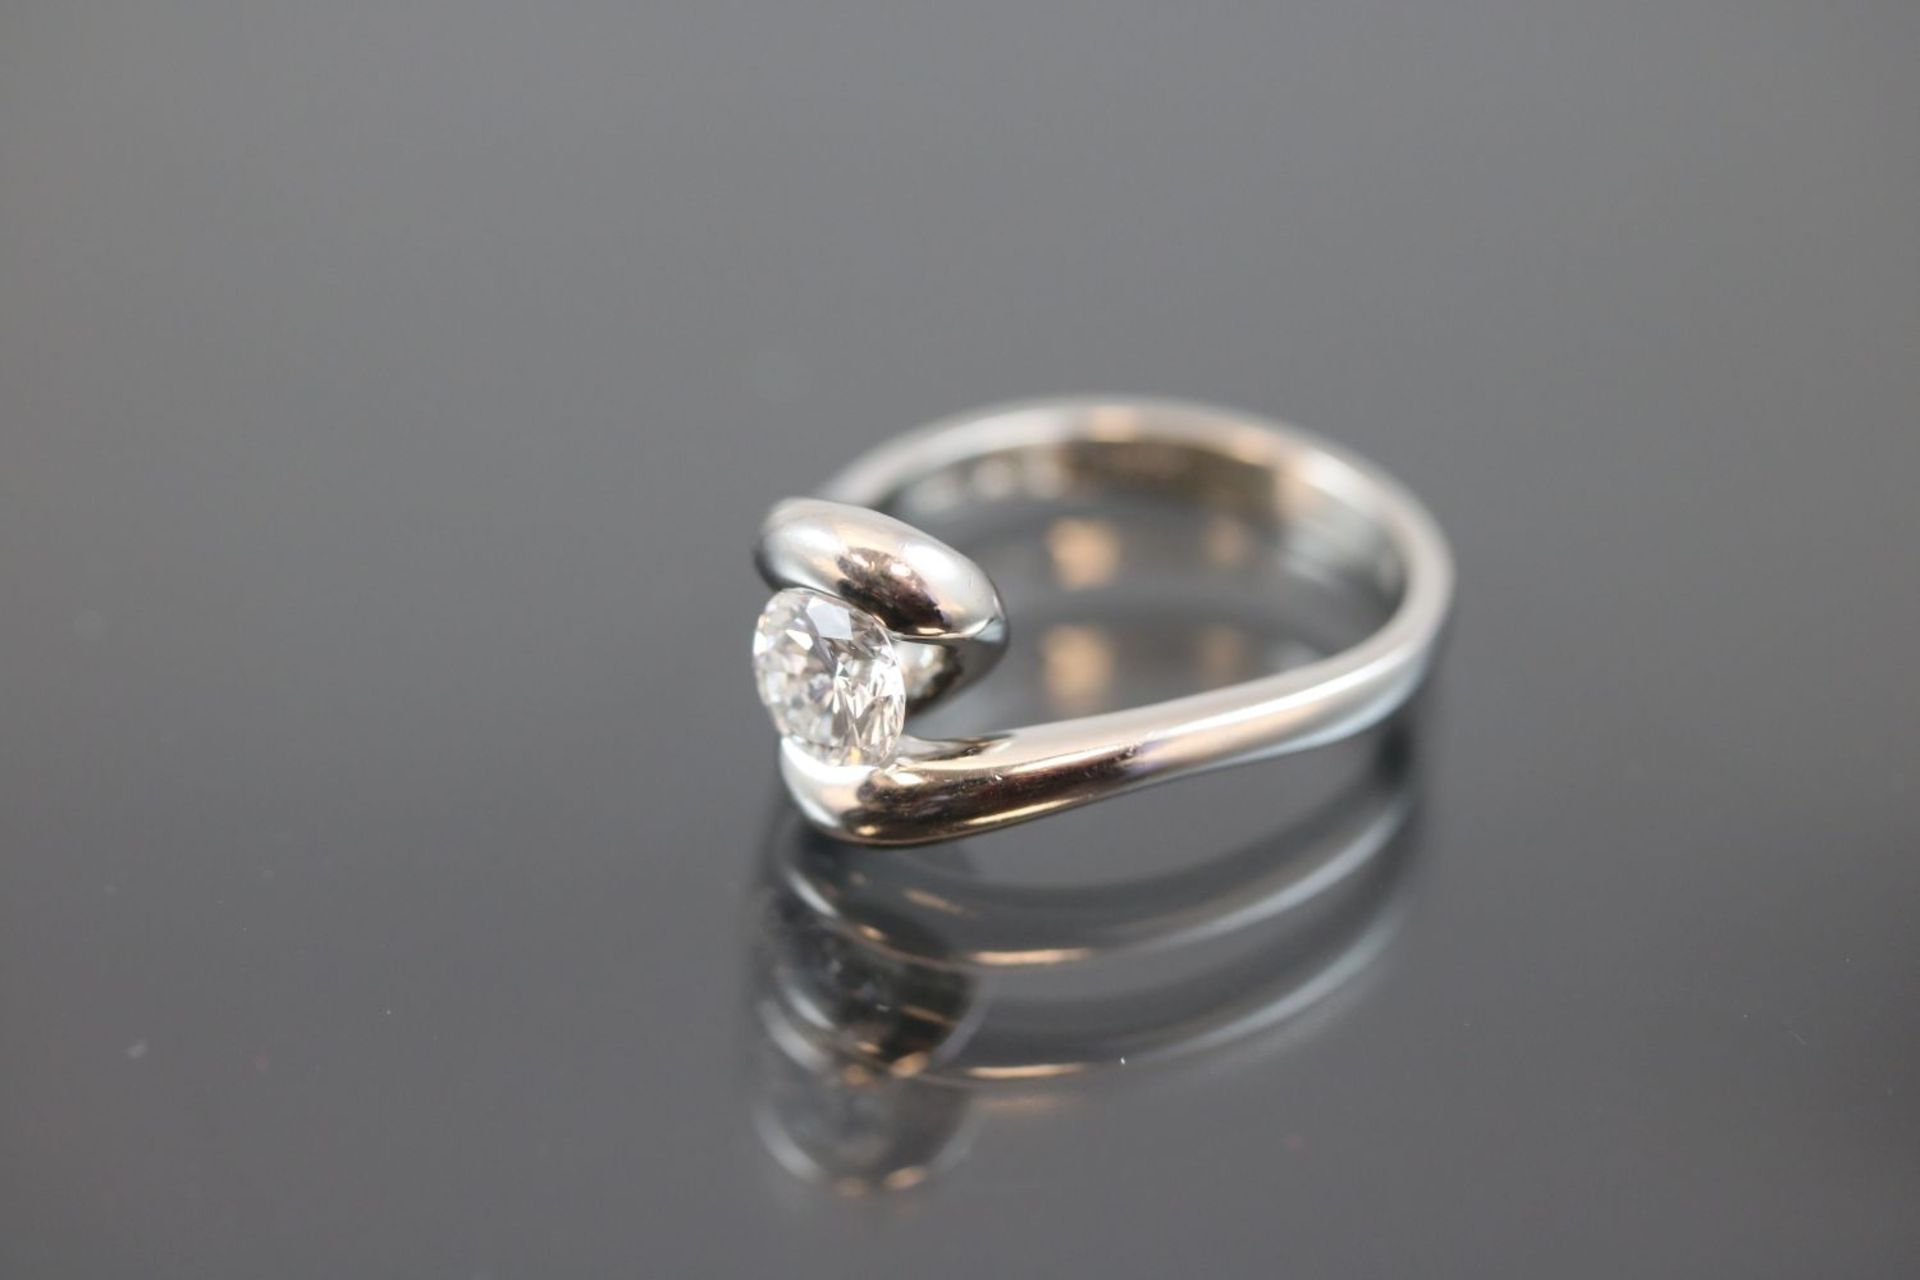 Brillant-Ring, 950 Platin7,6 Gramm 1 Brillant, 0,837 ct., feines weiß/lupenrein. Ringgröße: 52Mit - Bild 3 aus 3